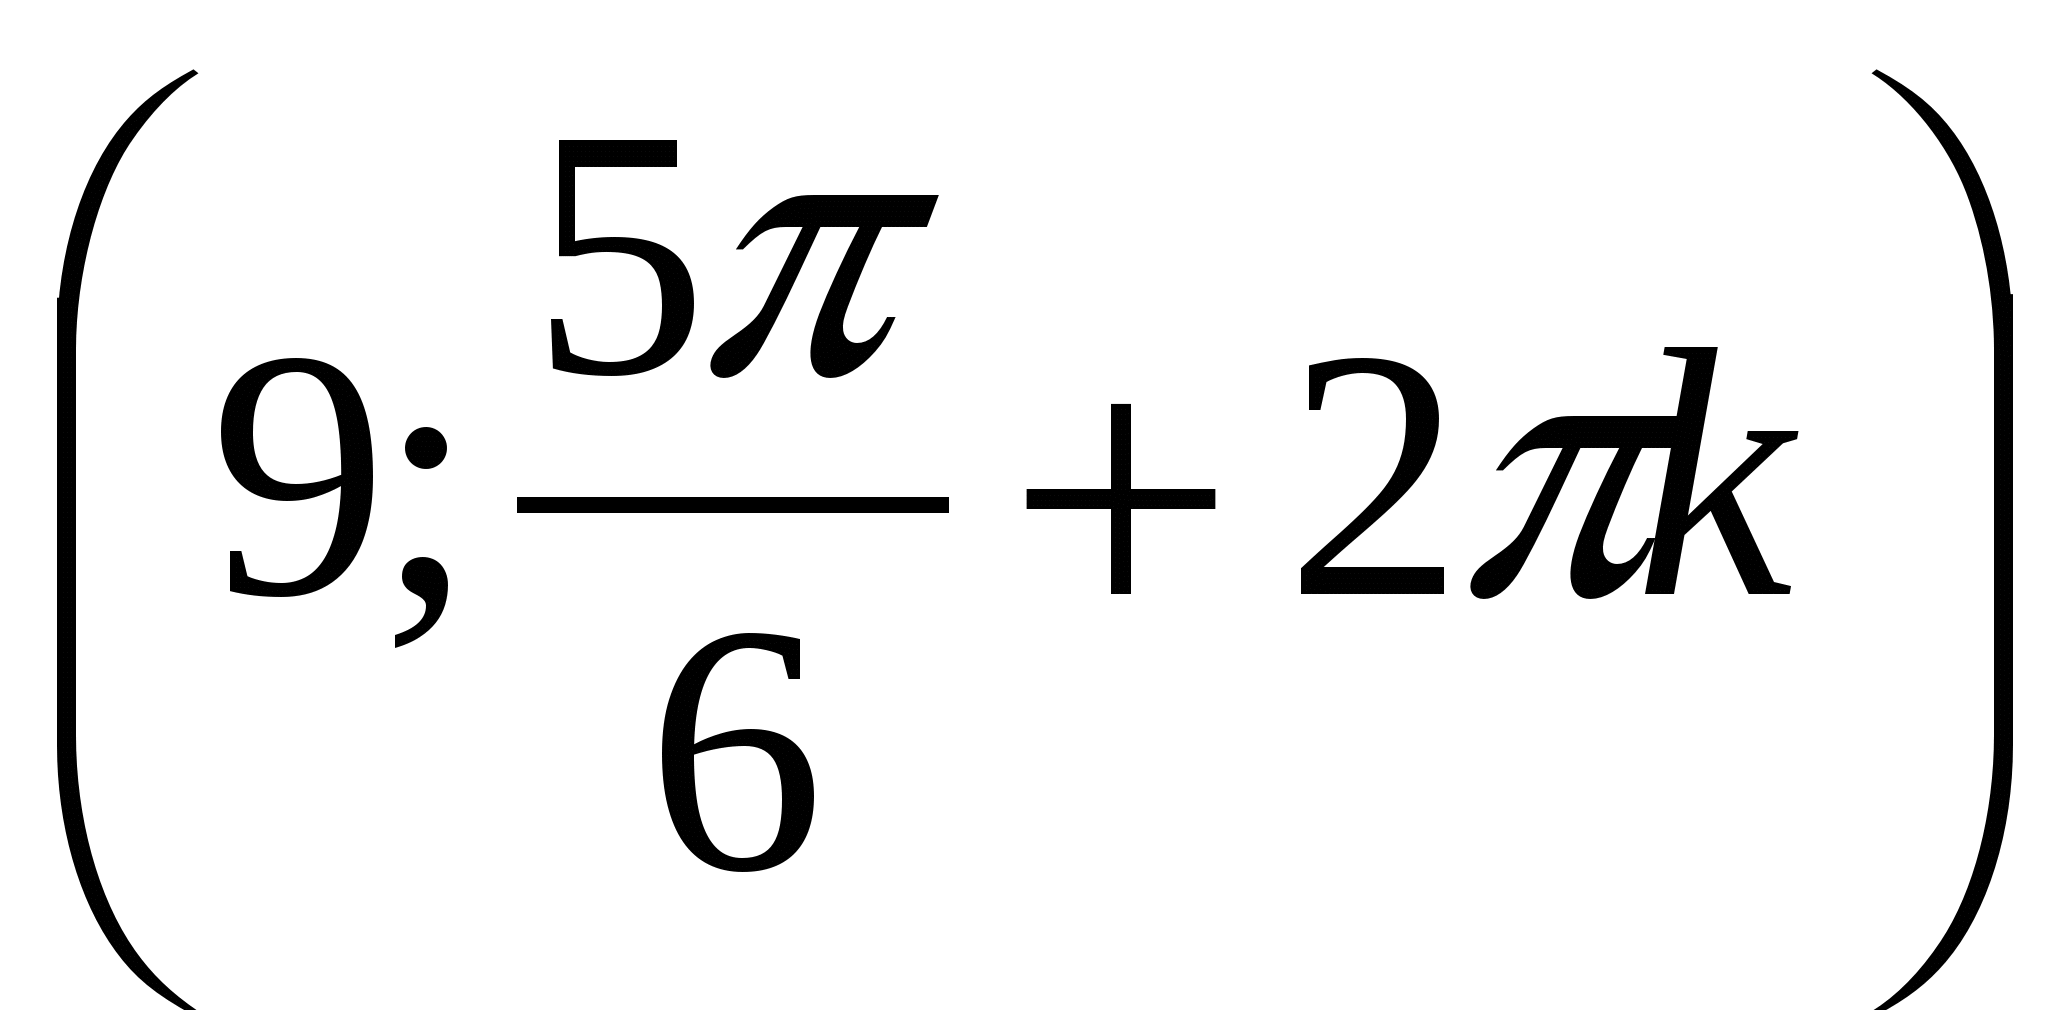 Контрольная работа по алгебре Корень n-ой степени (11 класс)